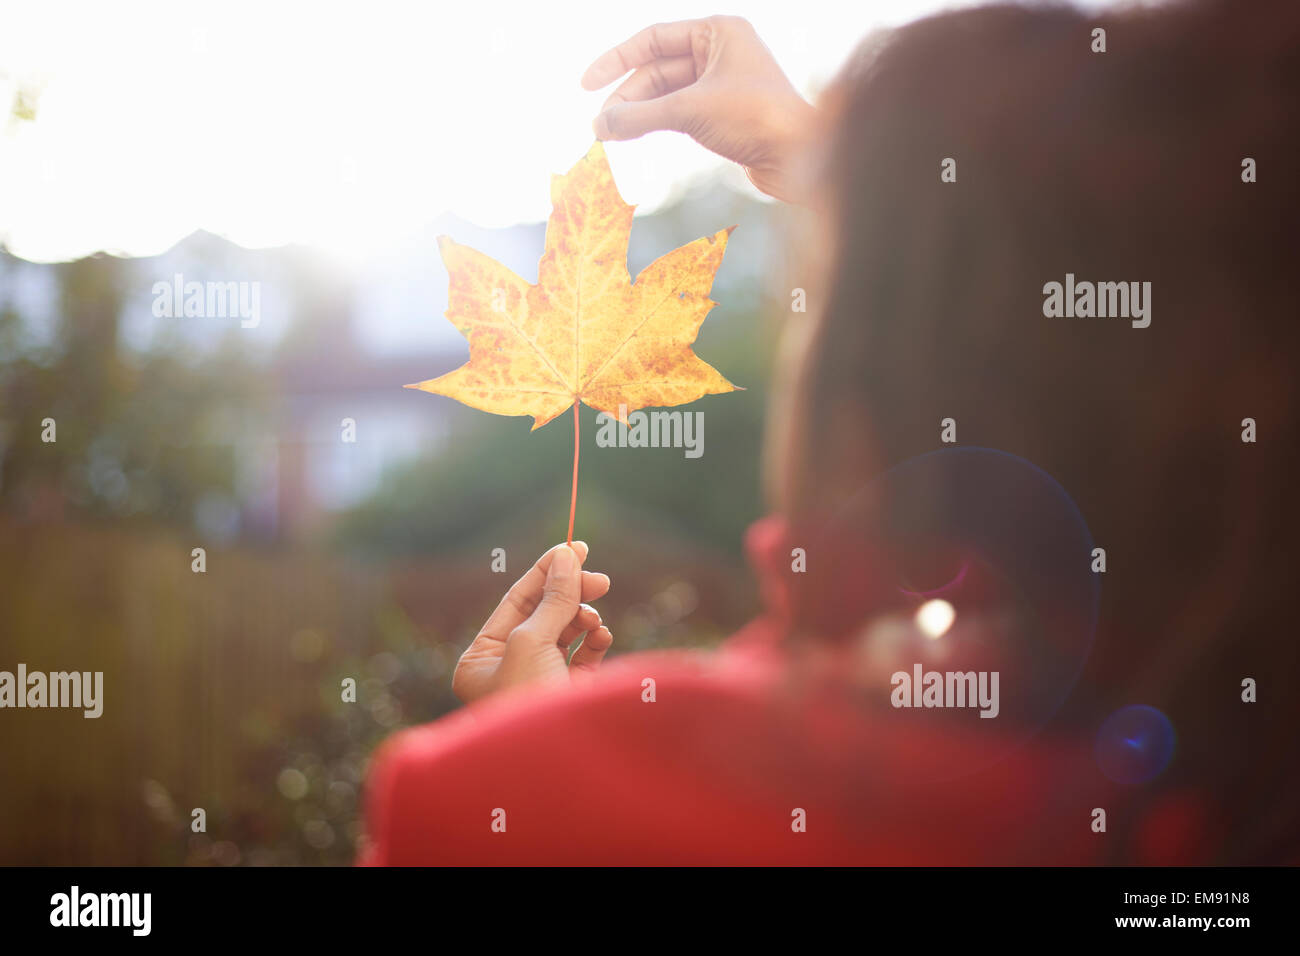 Les mains de womans holding up autumn leaf in sunlit park Banque D'Images